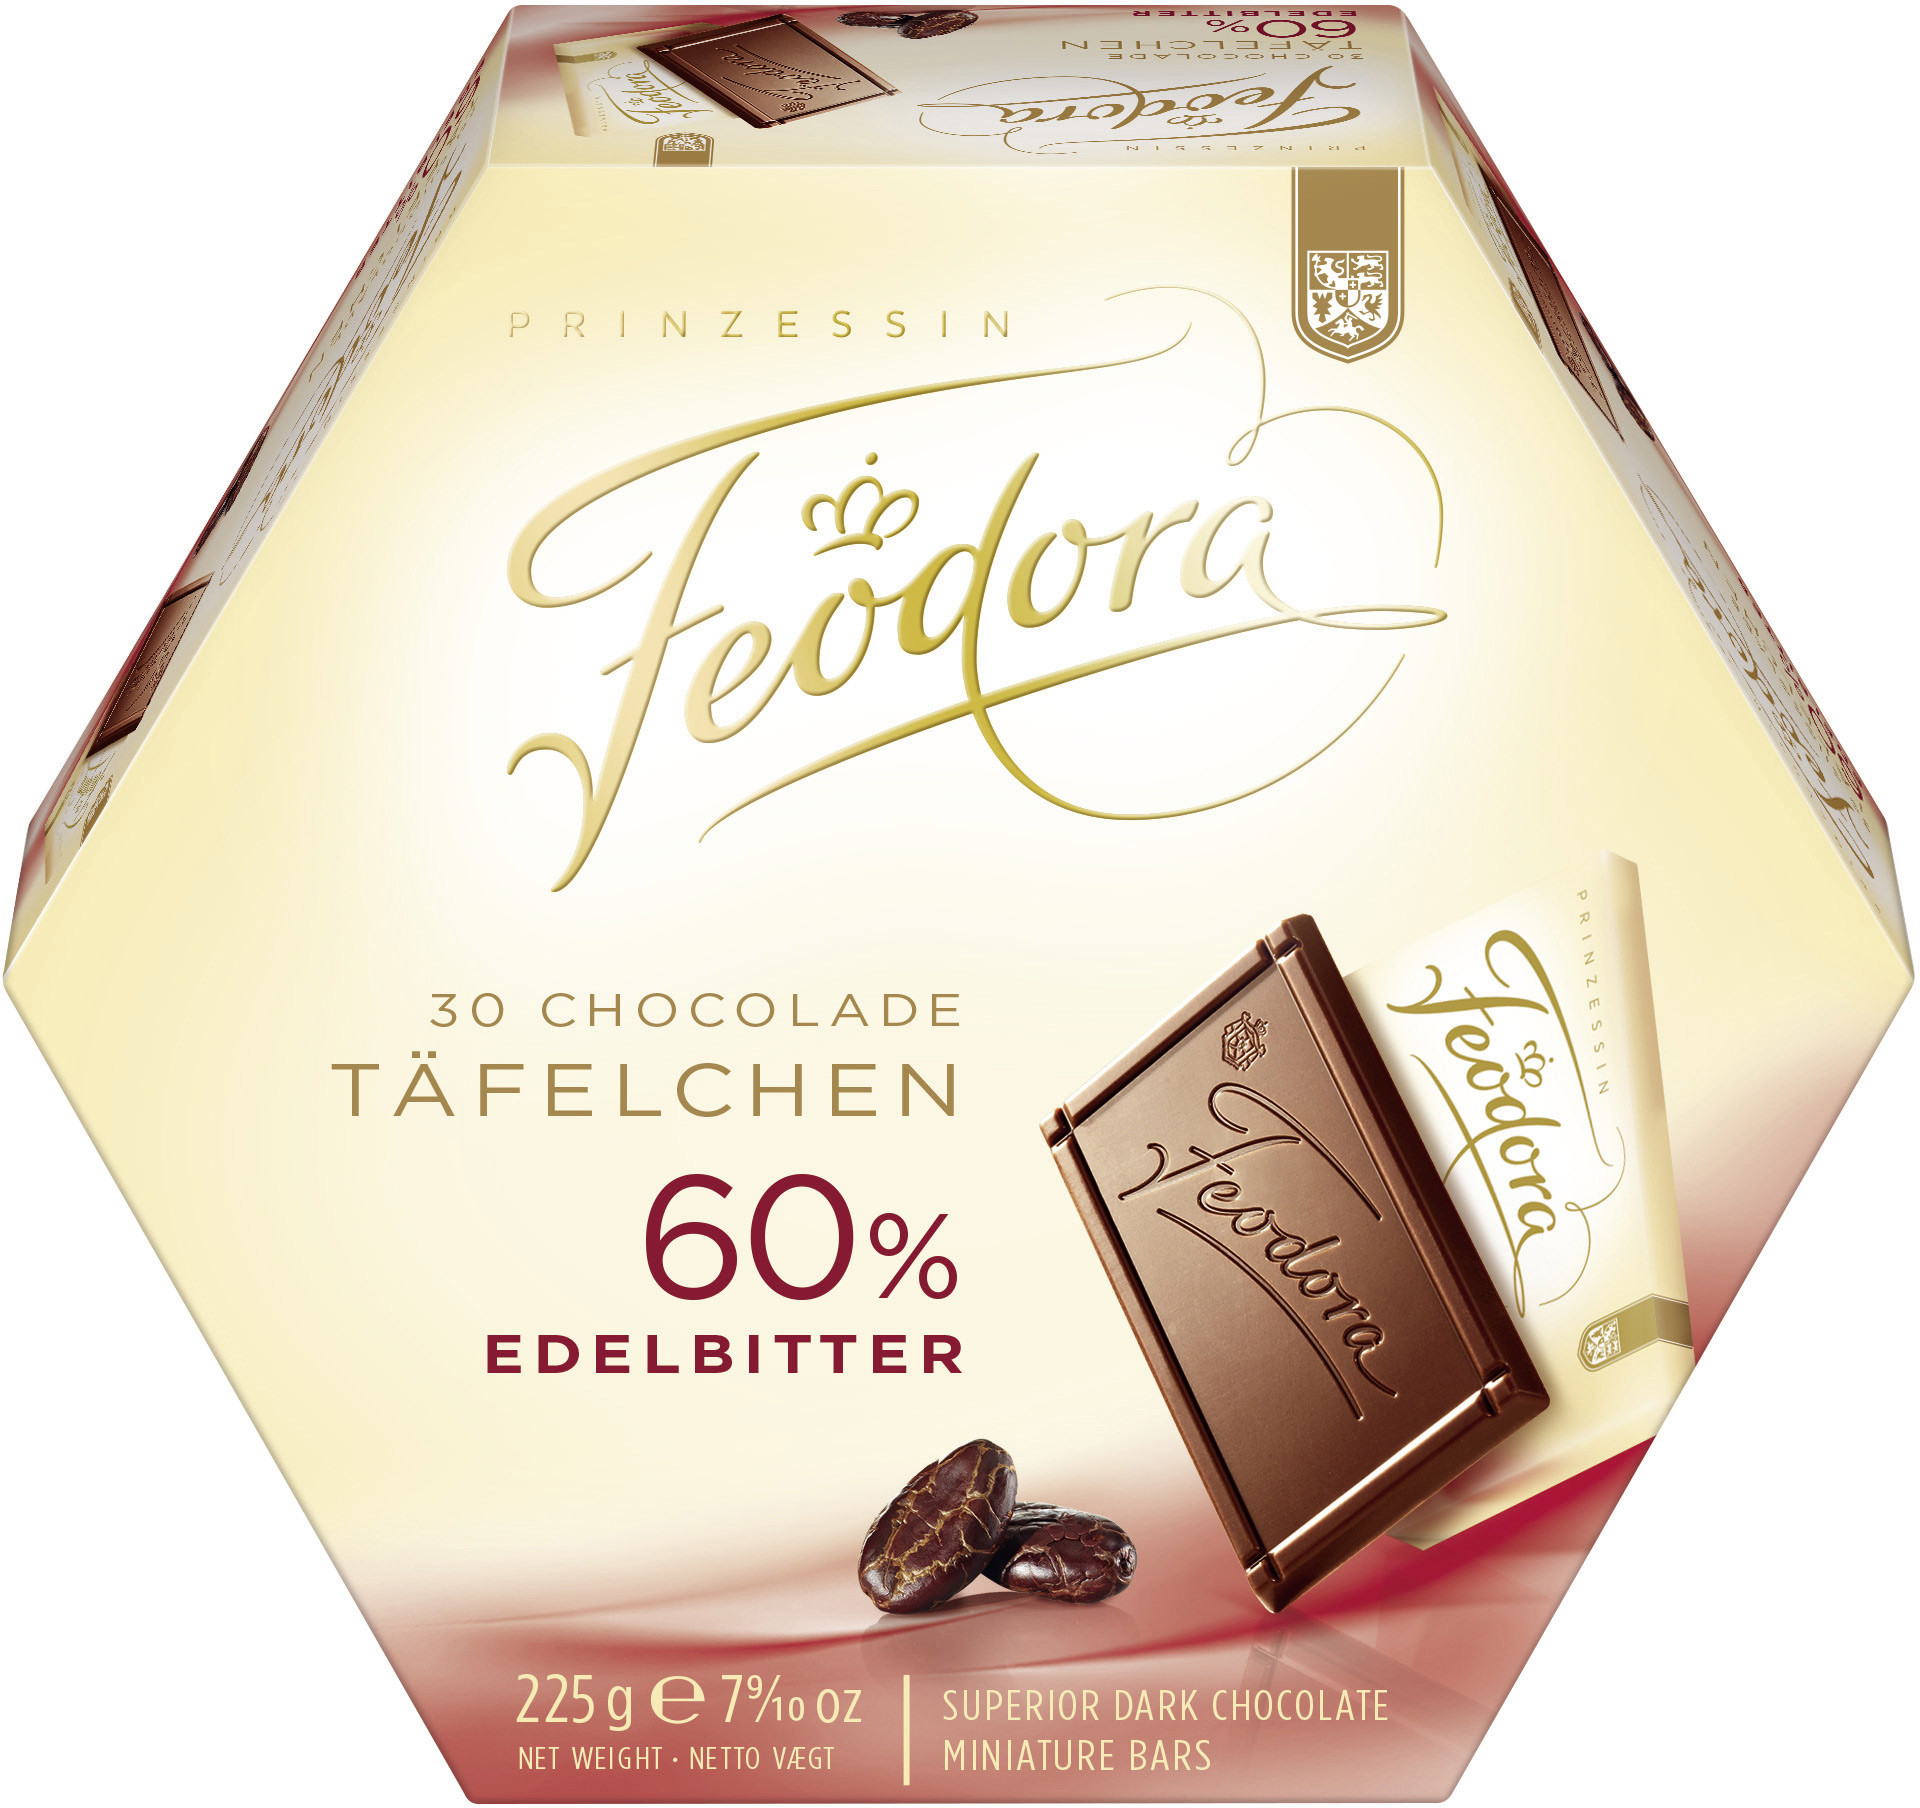 Feodora.De/Geschenke
 Feodora Chocolade Täfelchen Edelbitter Schokolade 30St